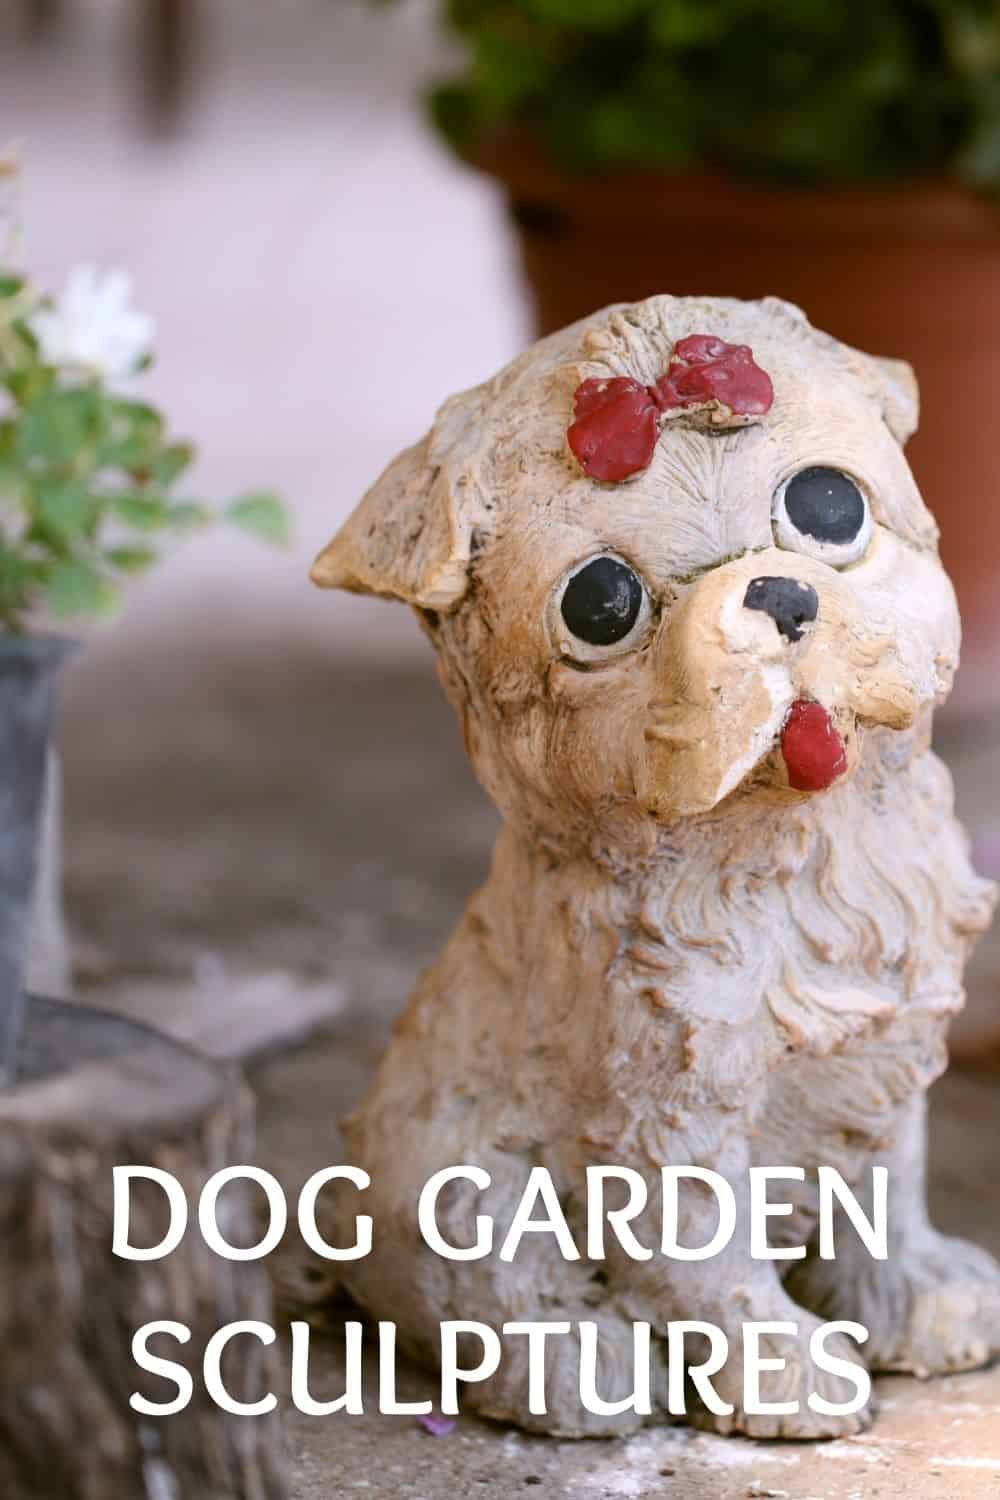 Dog garden sculptures